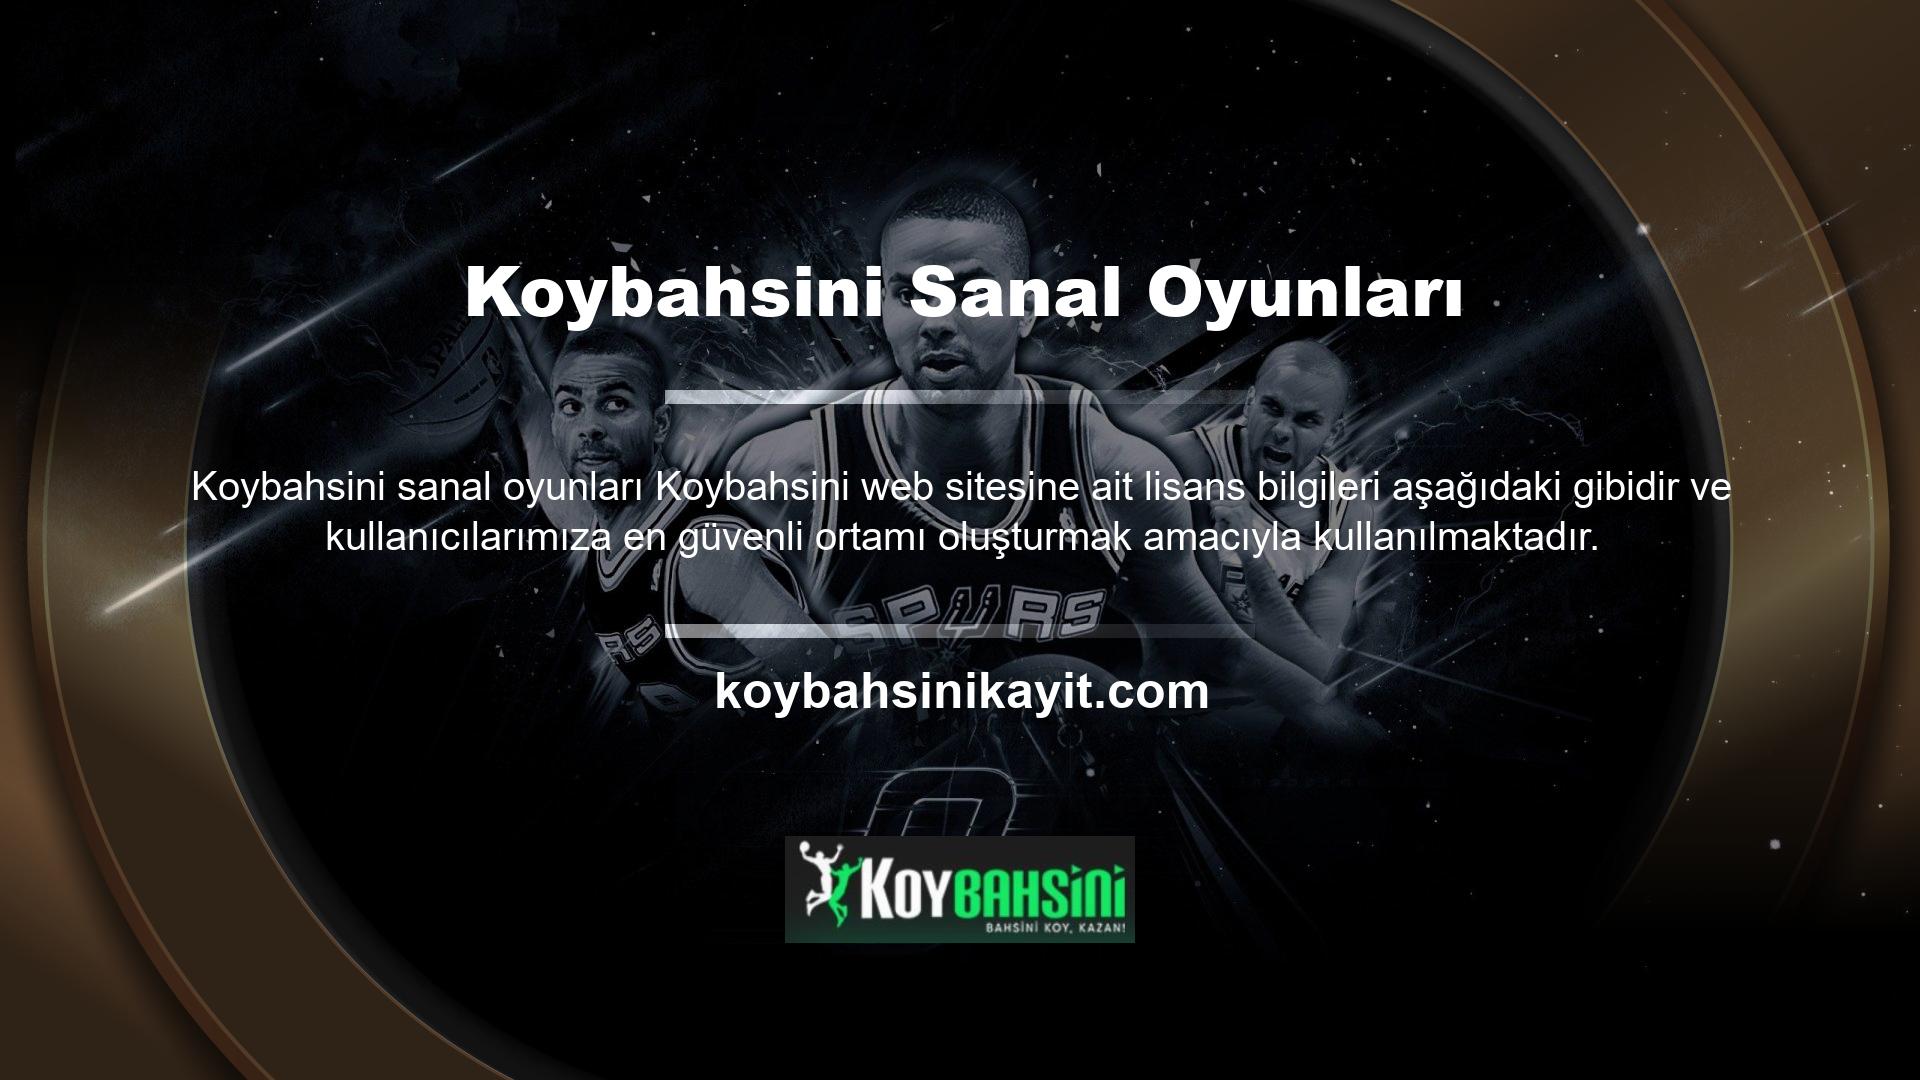 Bu nedenle Koybahsini sitesine olan güveninizden hiçbir şüphe duymadan bu sitenin tüm özelliklerini kullanabilirsiniz